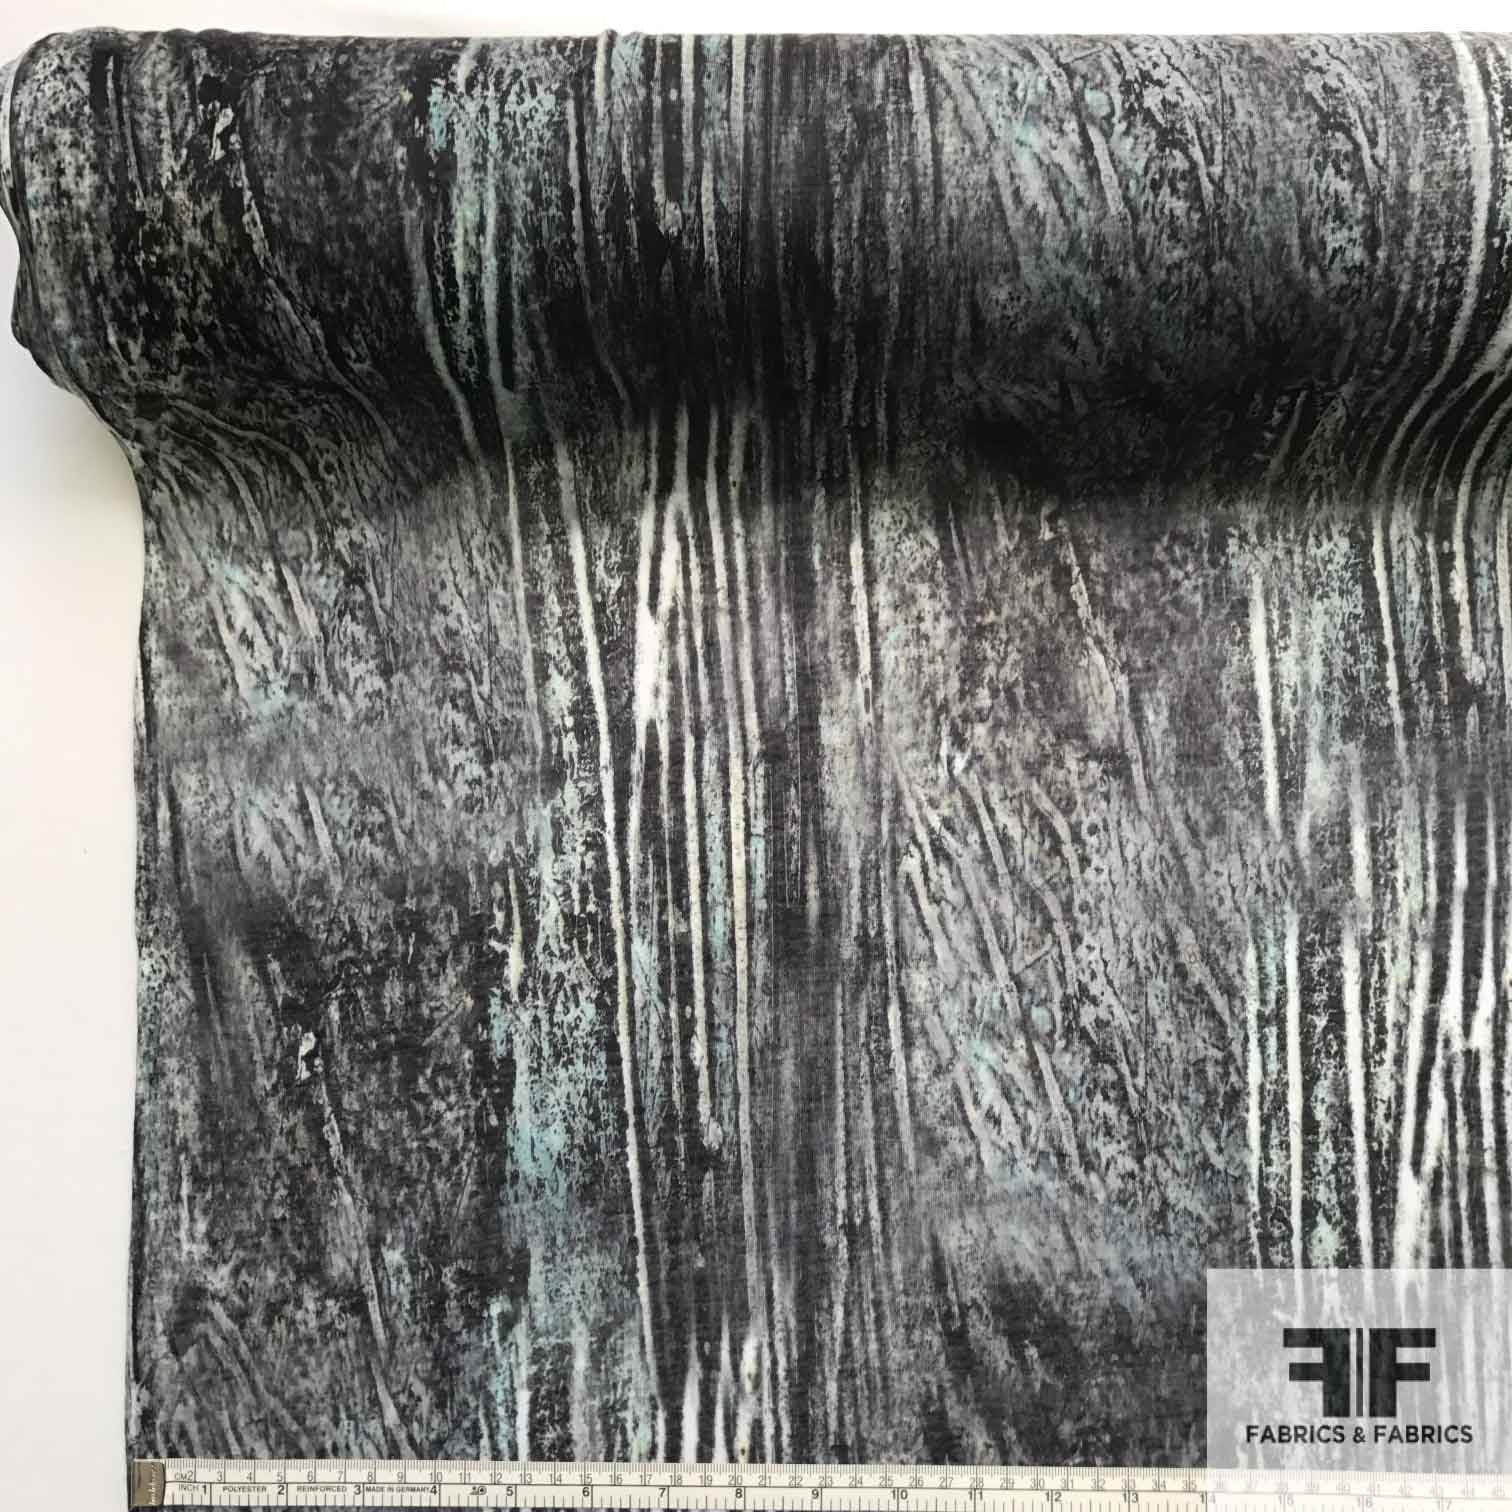 Abstract Printed Knit - Grey/Teal/Black - Fabrics & Fabrics NY